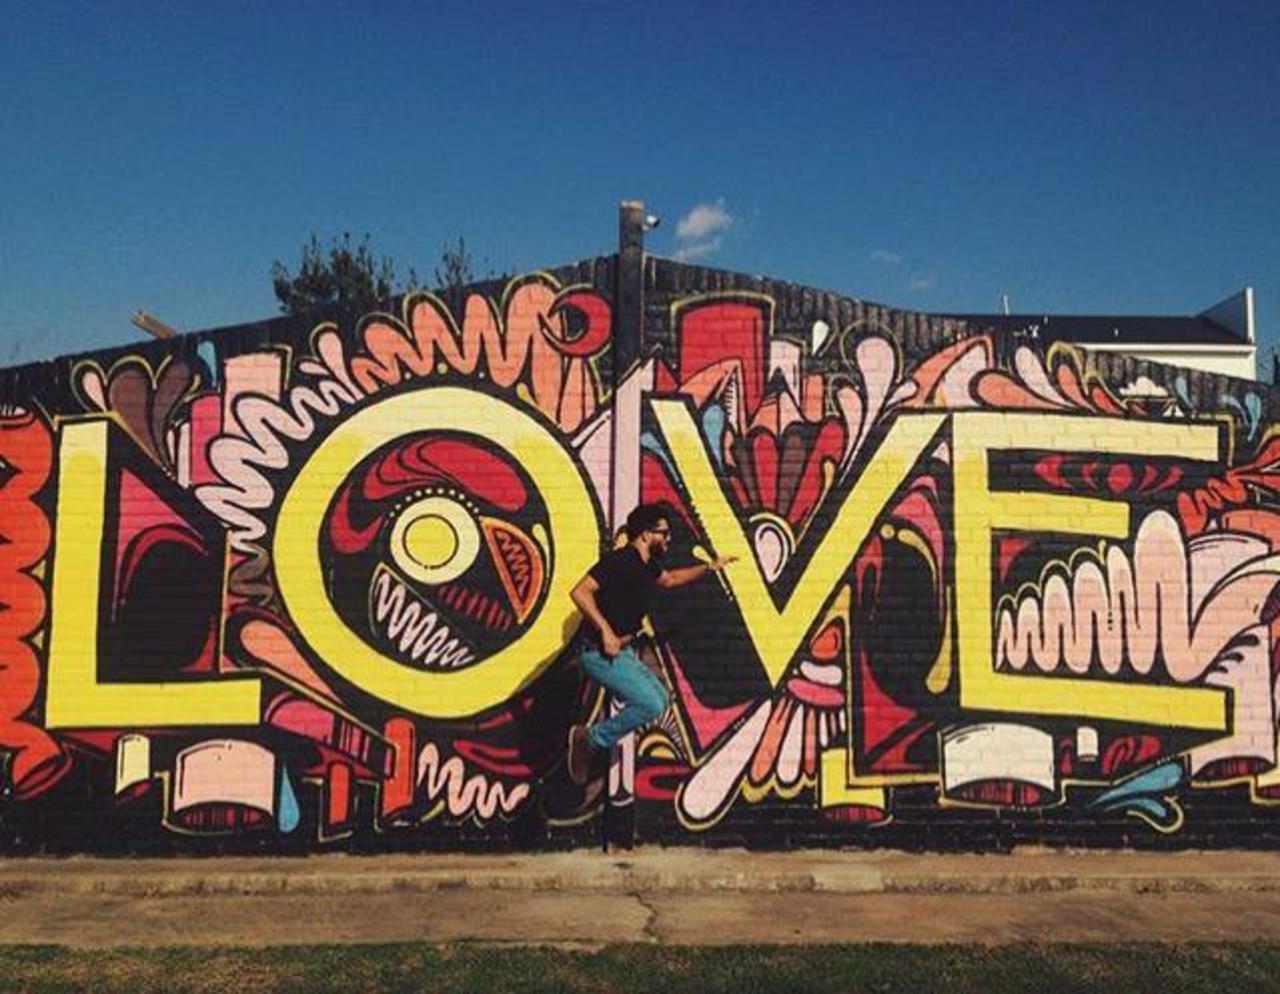 https://goo.gl/t4fpx2 RT GoogleStreetArt: Love ❤️
Street Art by WileyArt

#art #graffiti #mural #streetart http://t.co/TjnlJrfbQe